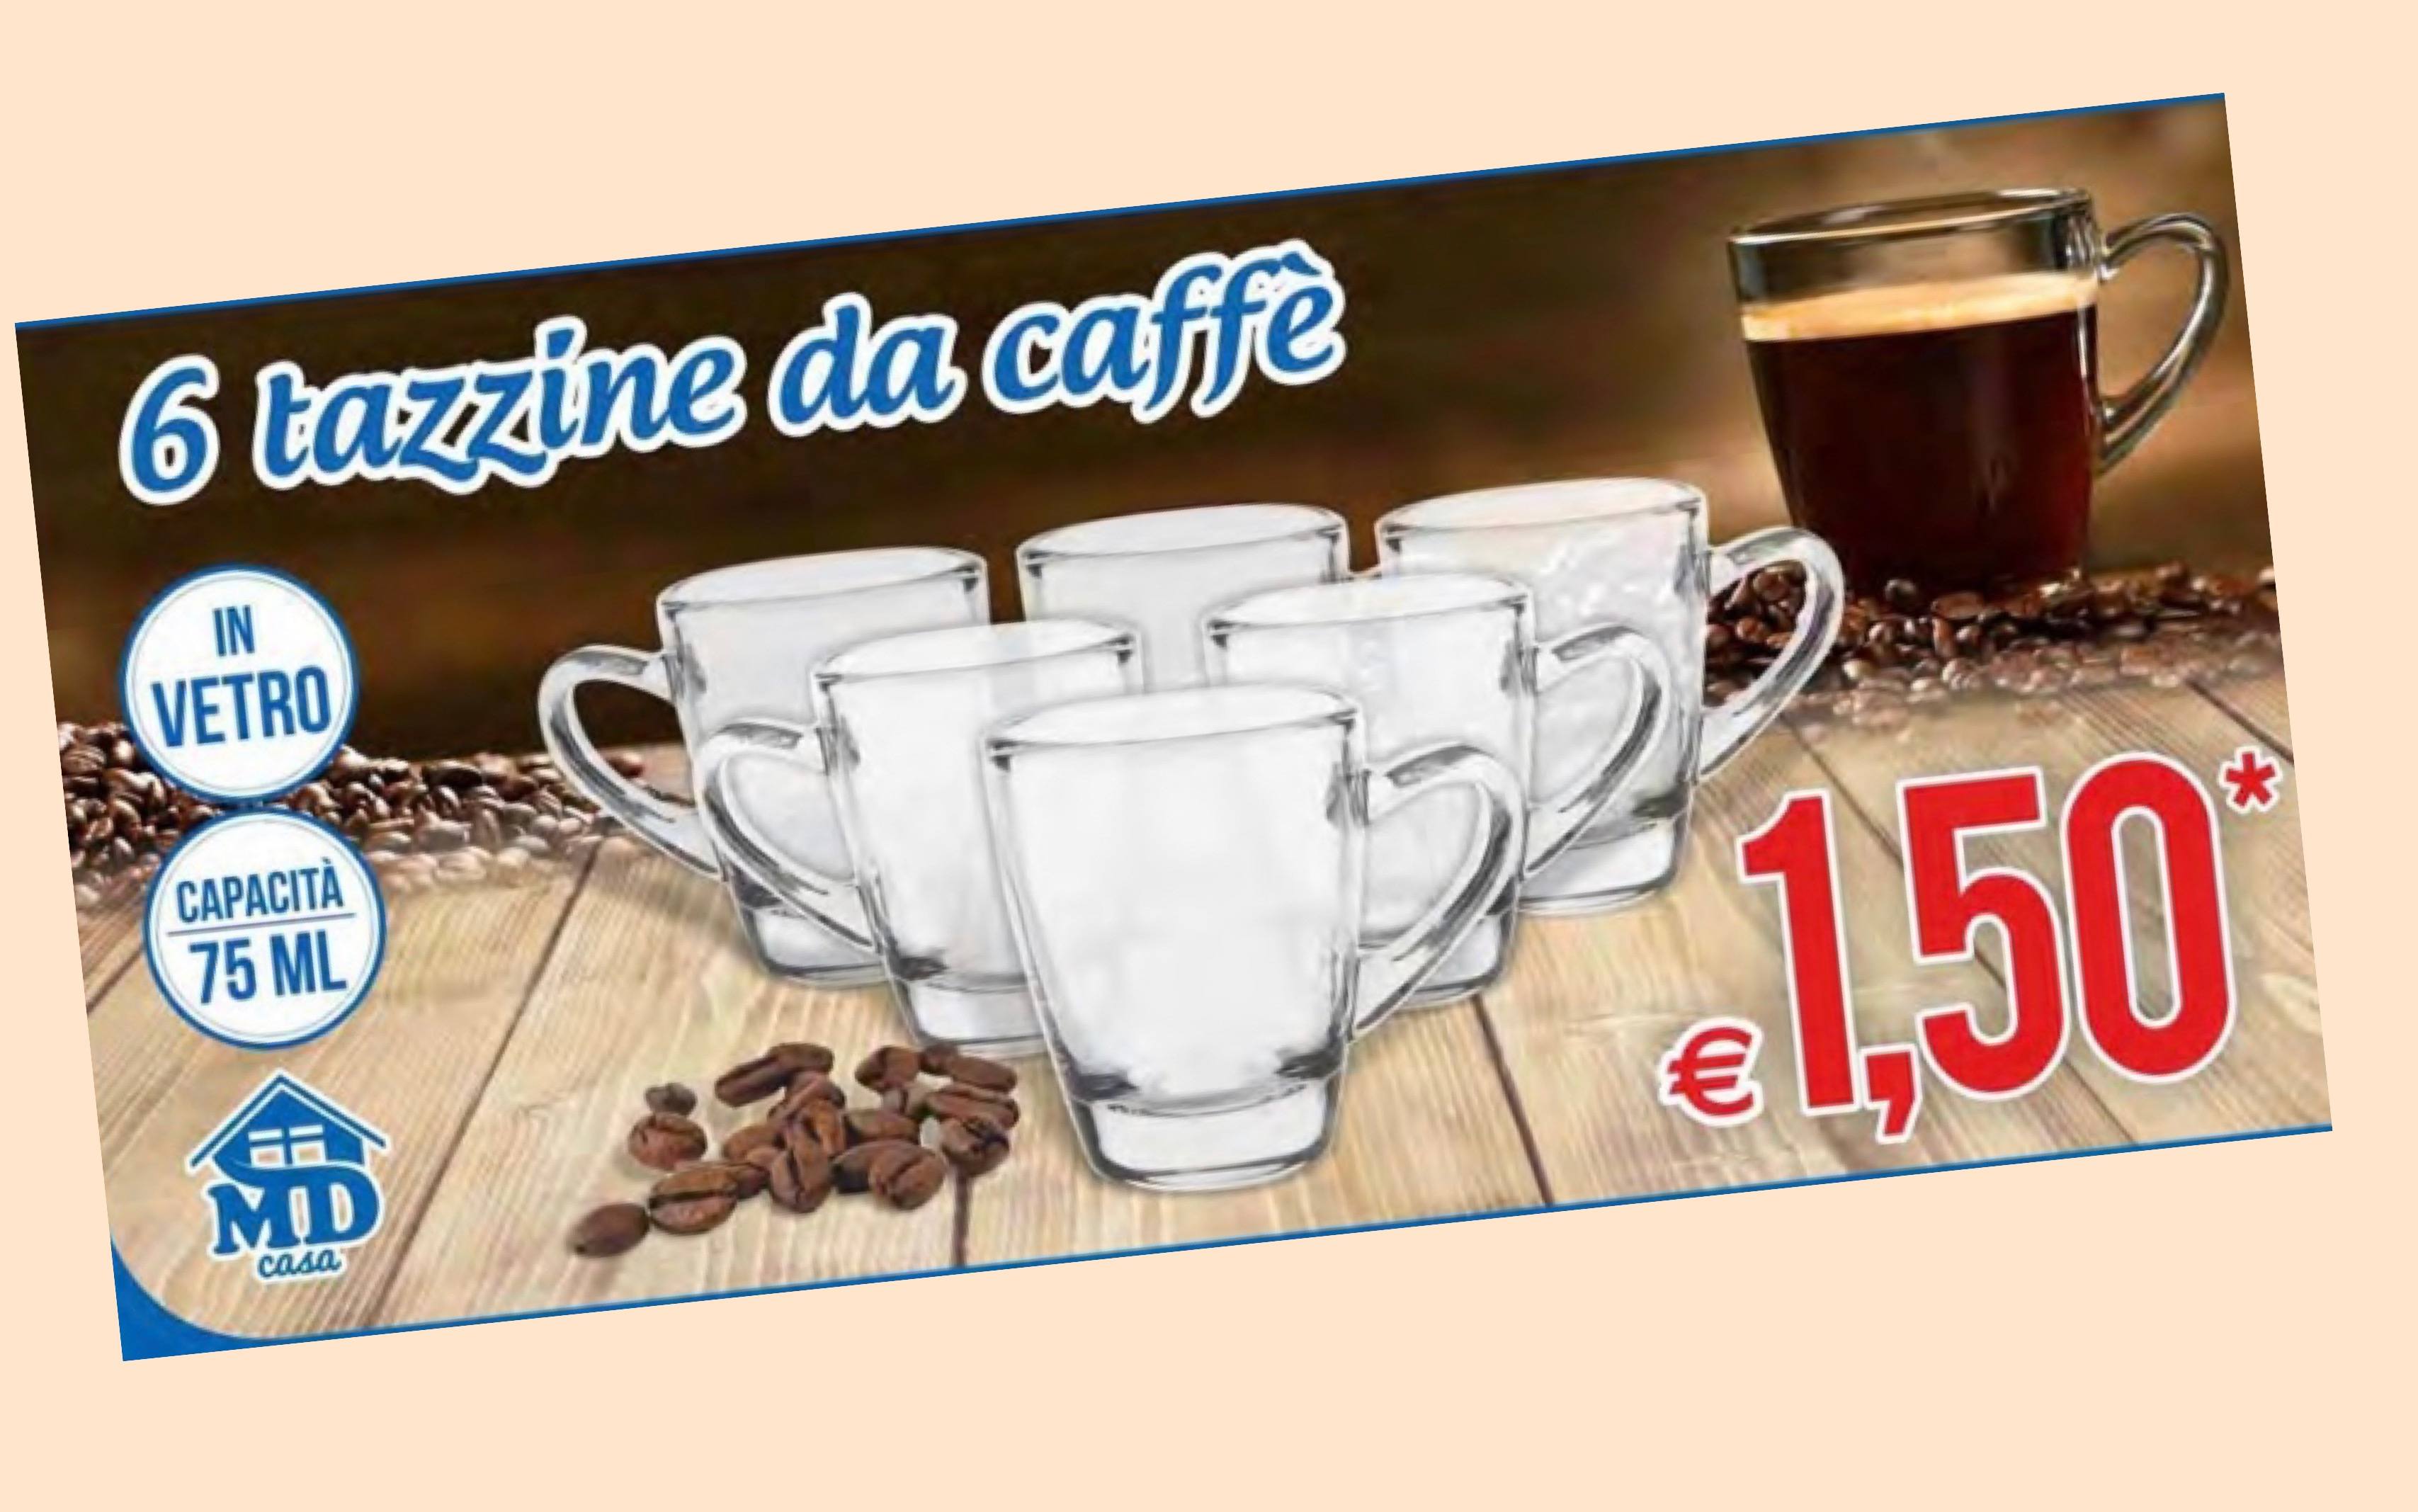 6-tazzine-da-caffe-a-solo-1,50e-da-md